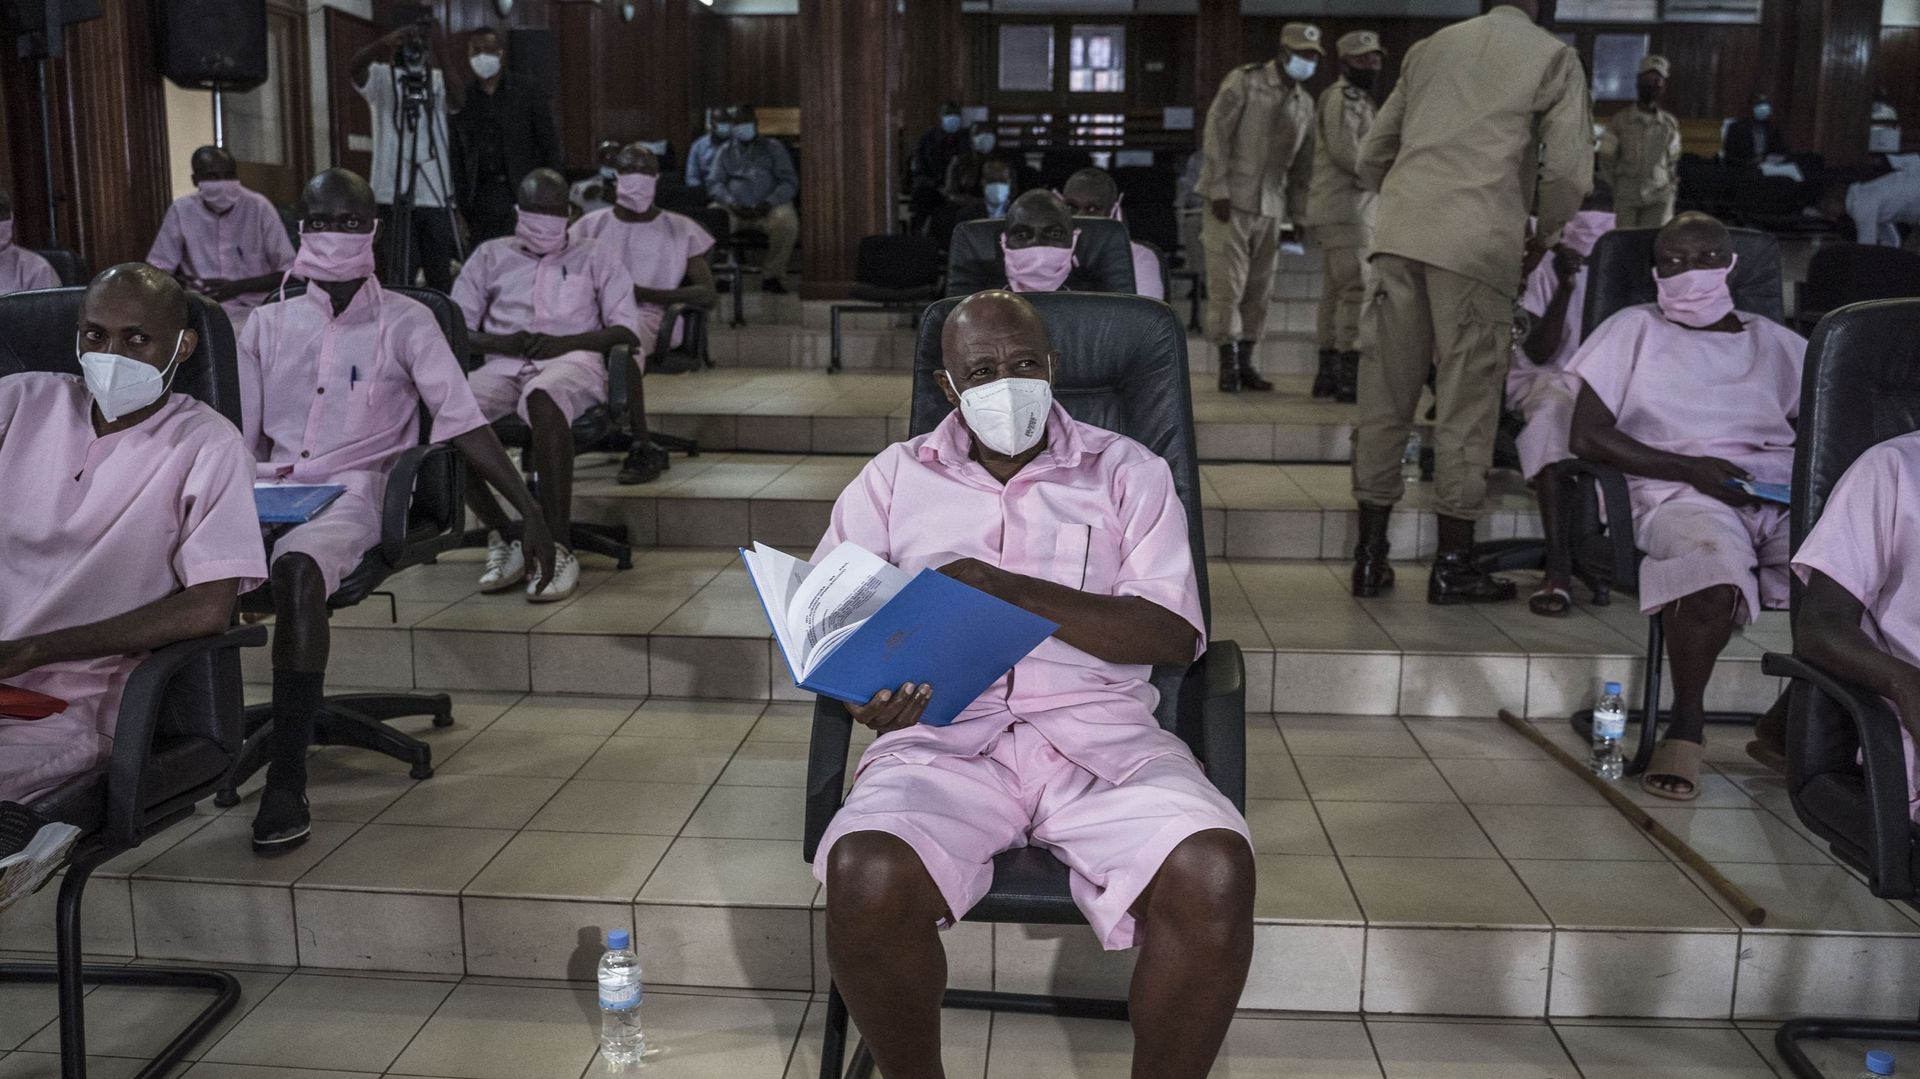 En tenue rose de prisonnier, Paul Rusesabagina a comparu avec ses coaccusés pour la première journée de son procès, le 17 février.